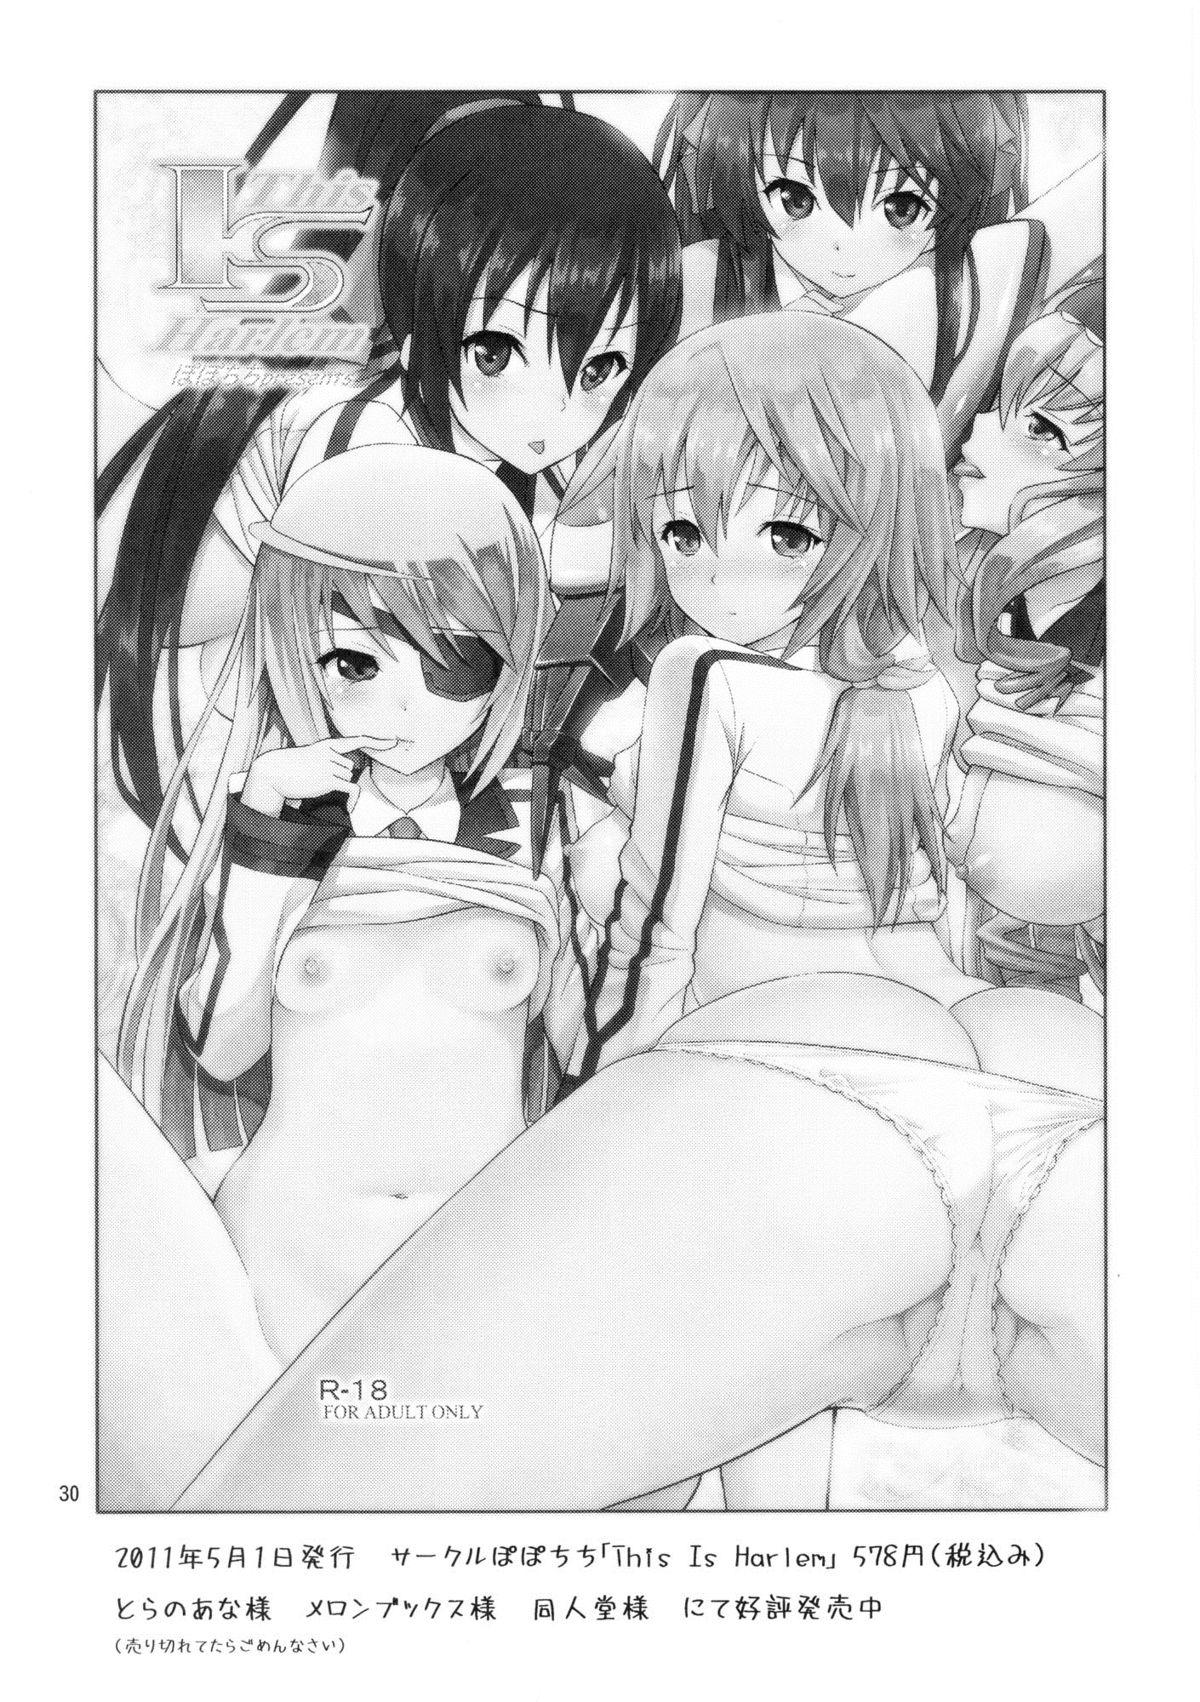 Ano Anaru no Sundome Manga wo Bokutachi wa Mada Shiranai | Ano Anaru - The Netorare Manga We Read That Day 28